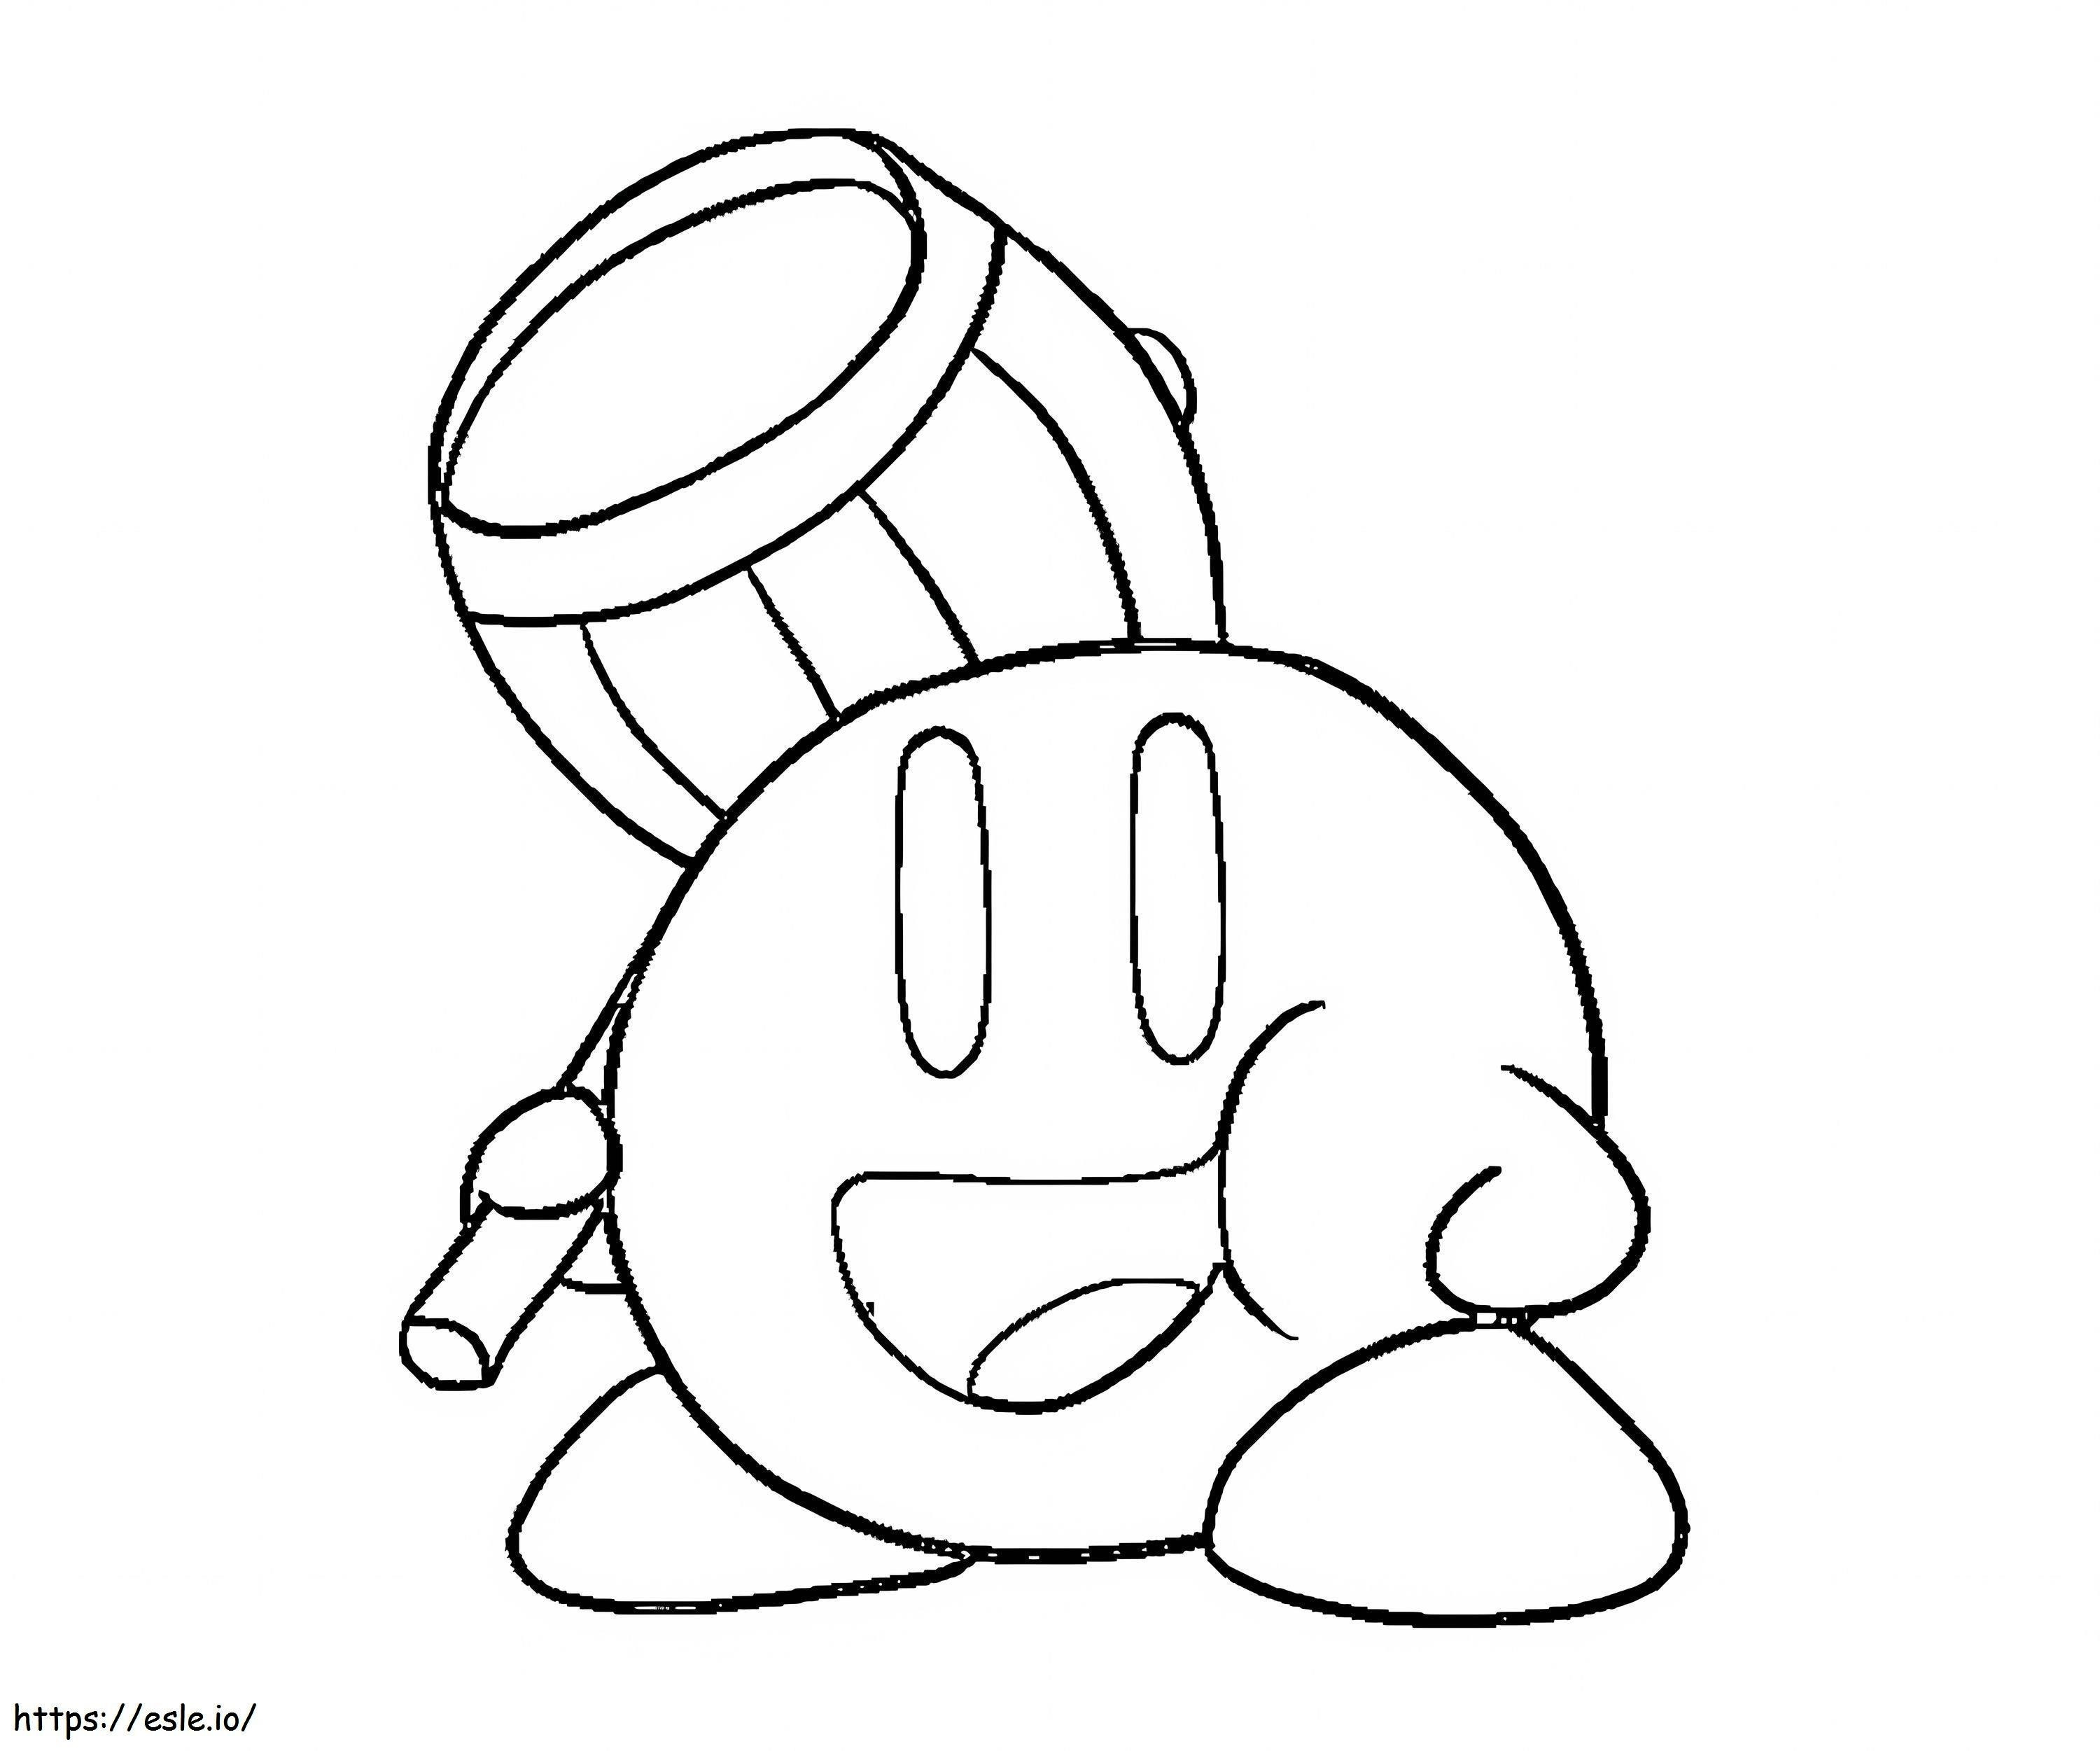 Disegna Kirby con in mano un martello da colorare